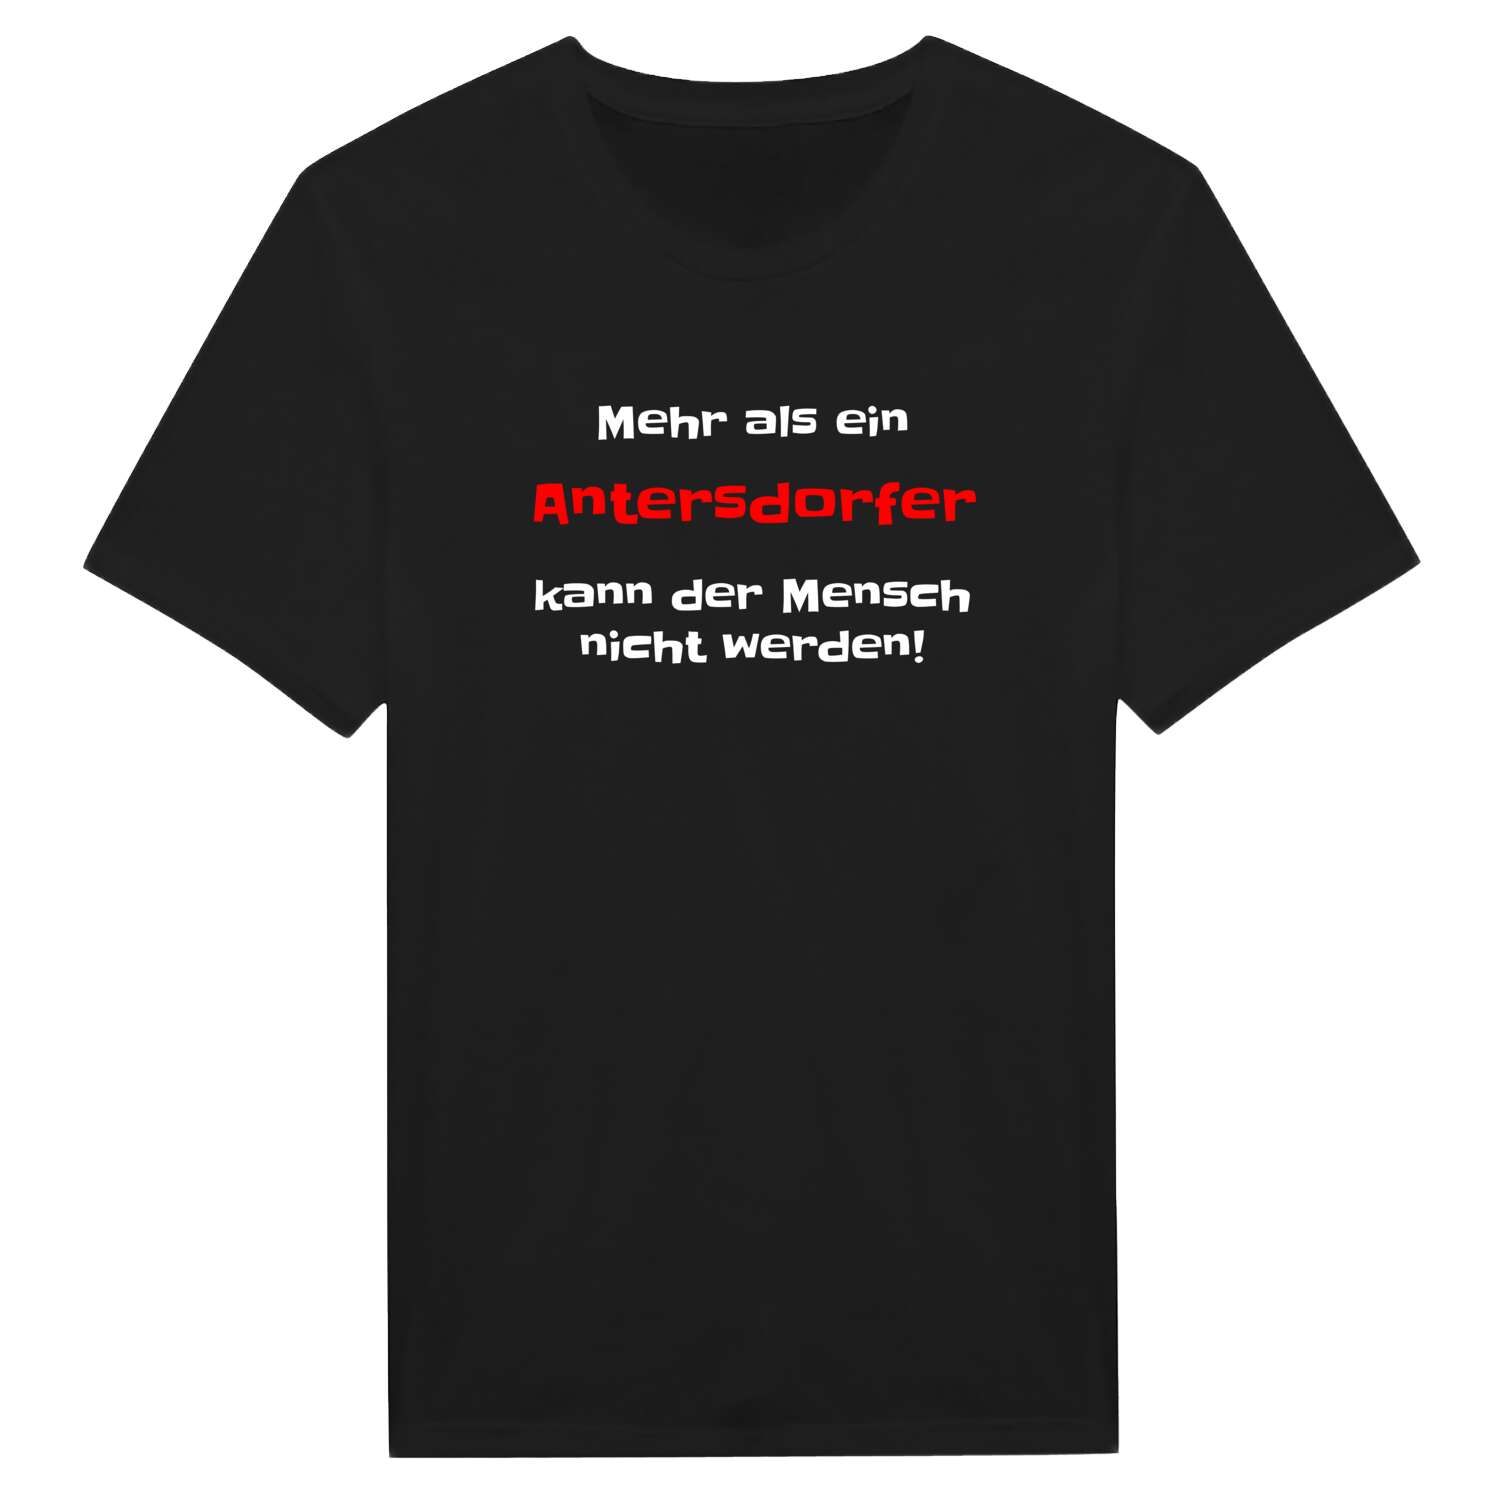 Antersdorf T-Shirt »Mehr als ein«